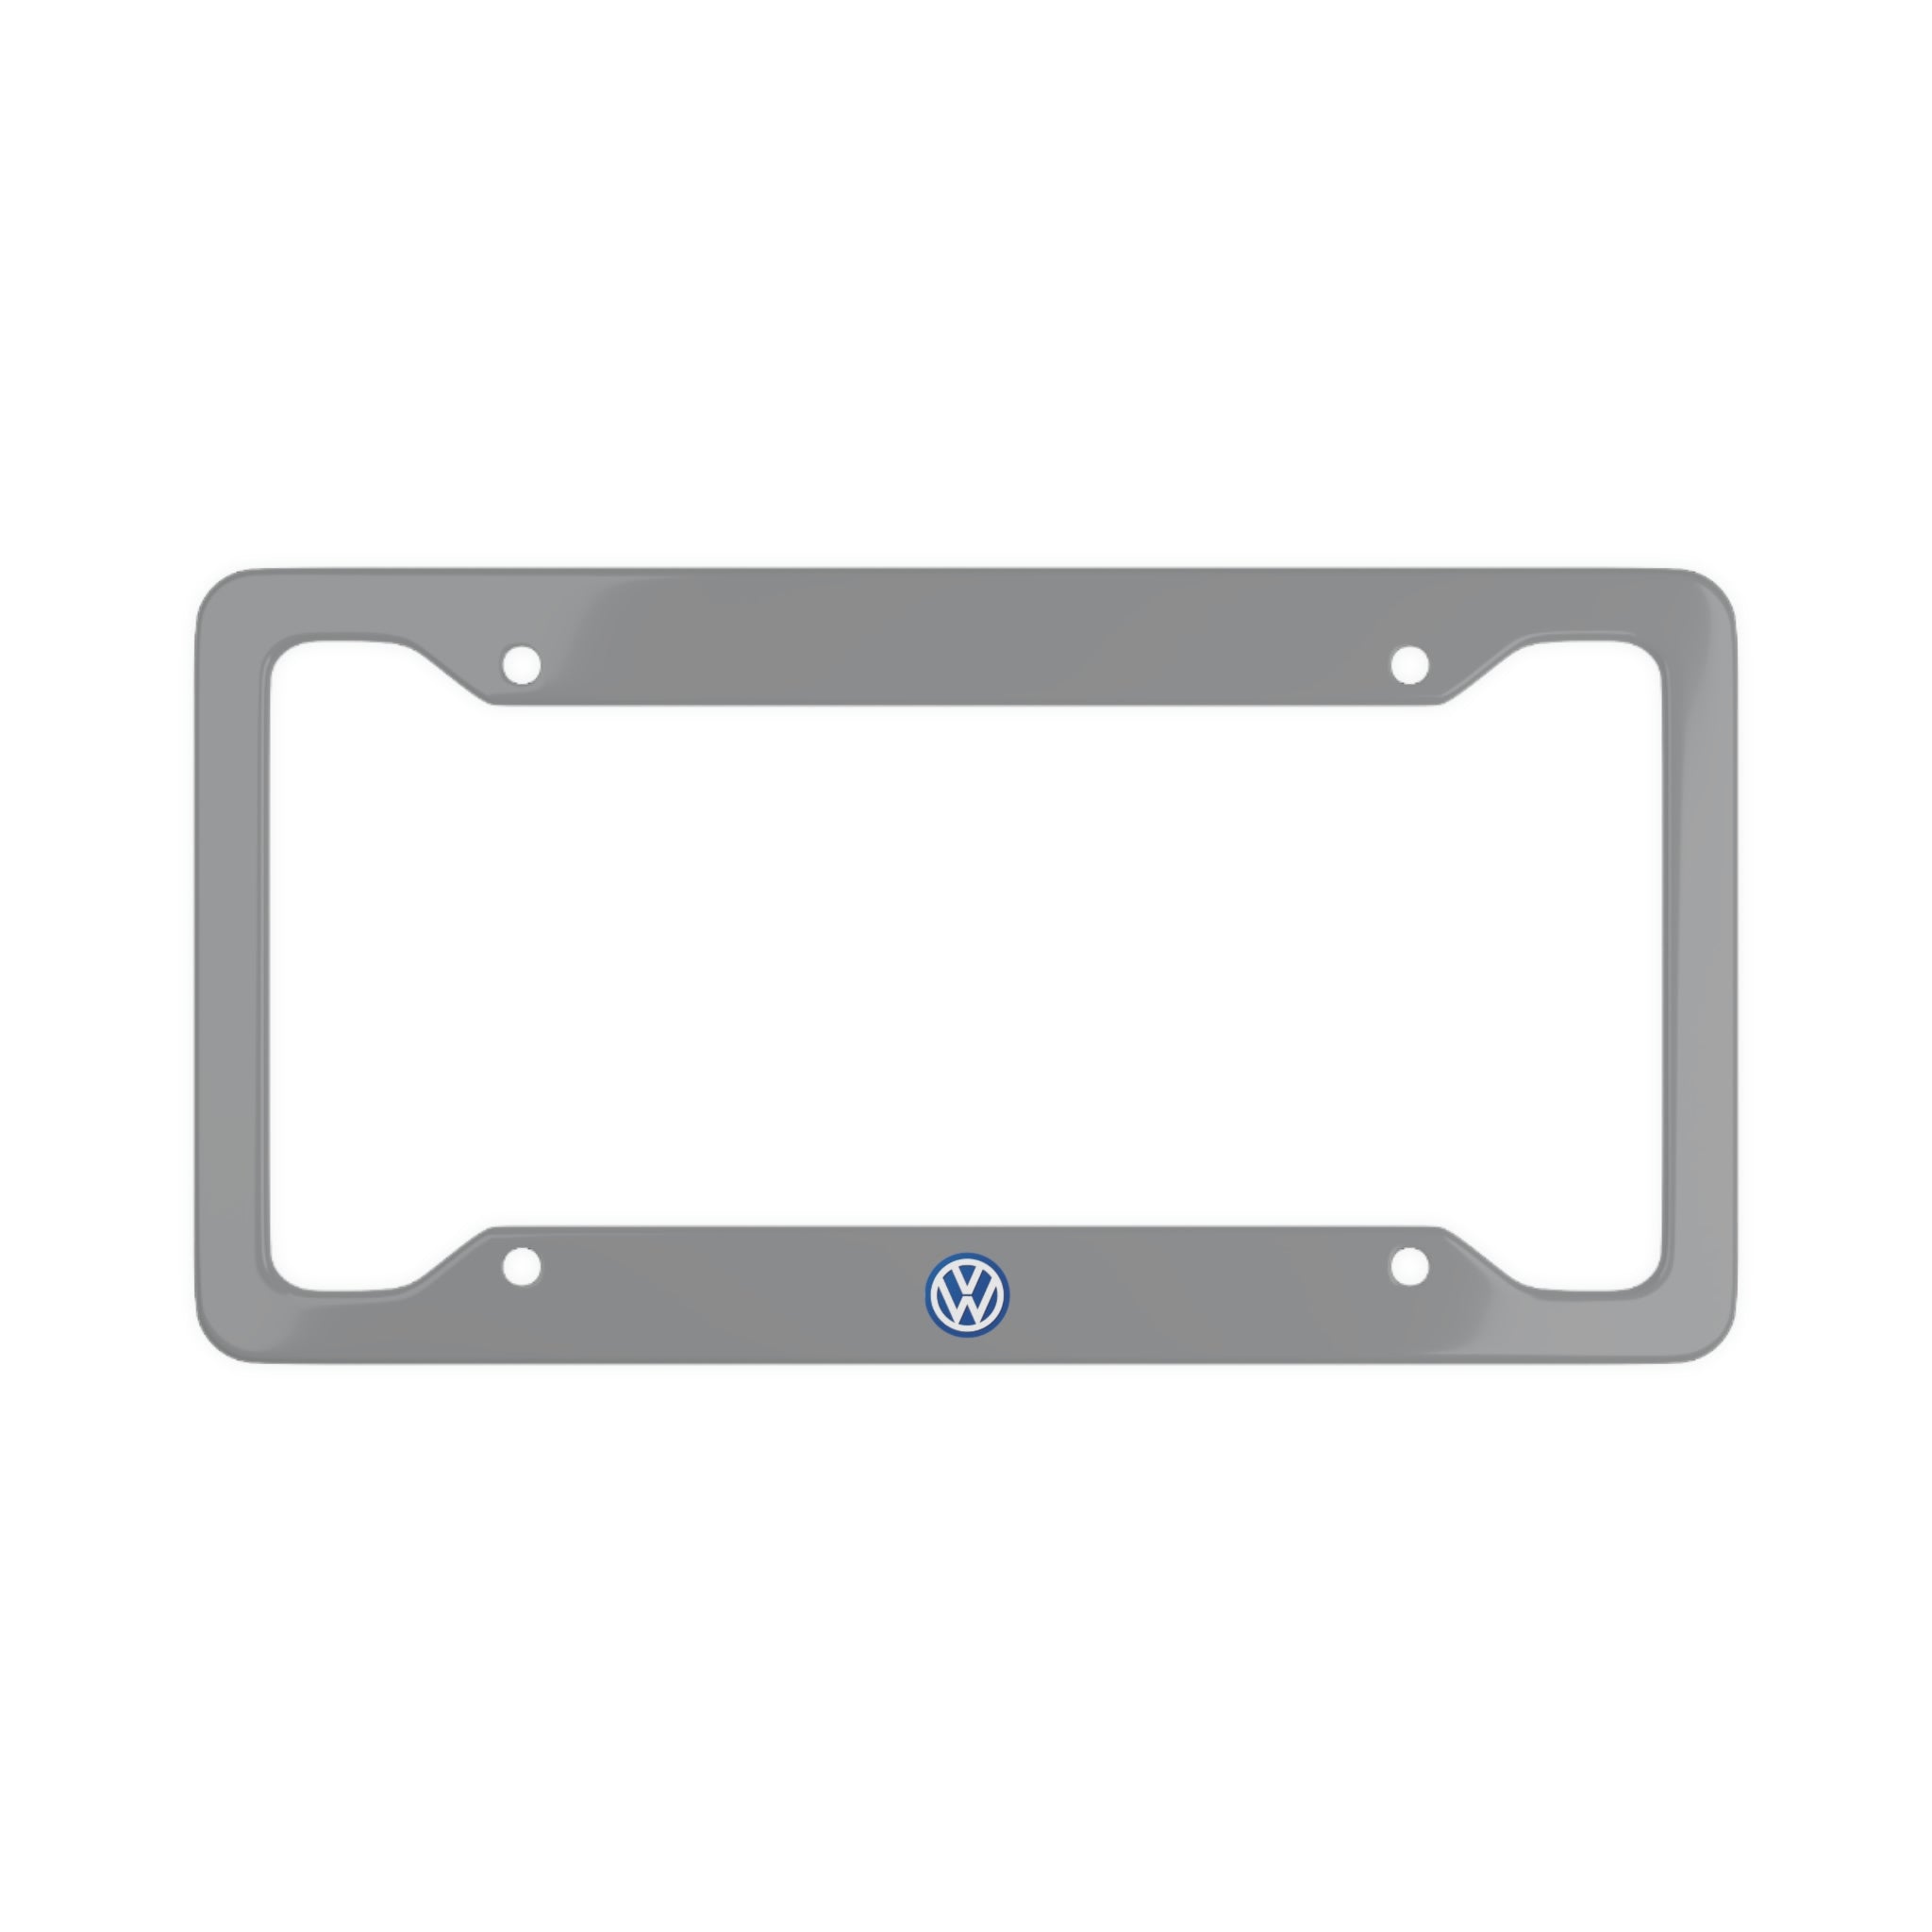 License plate holder license plate holder license plate holder chrome for  VW For